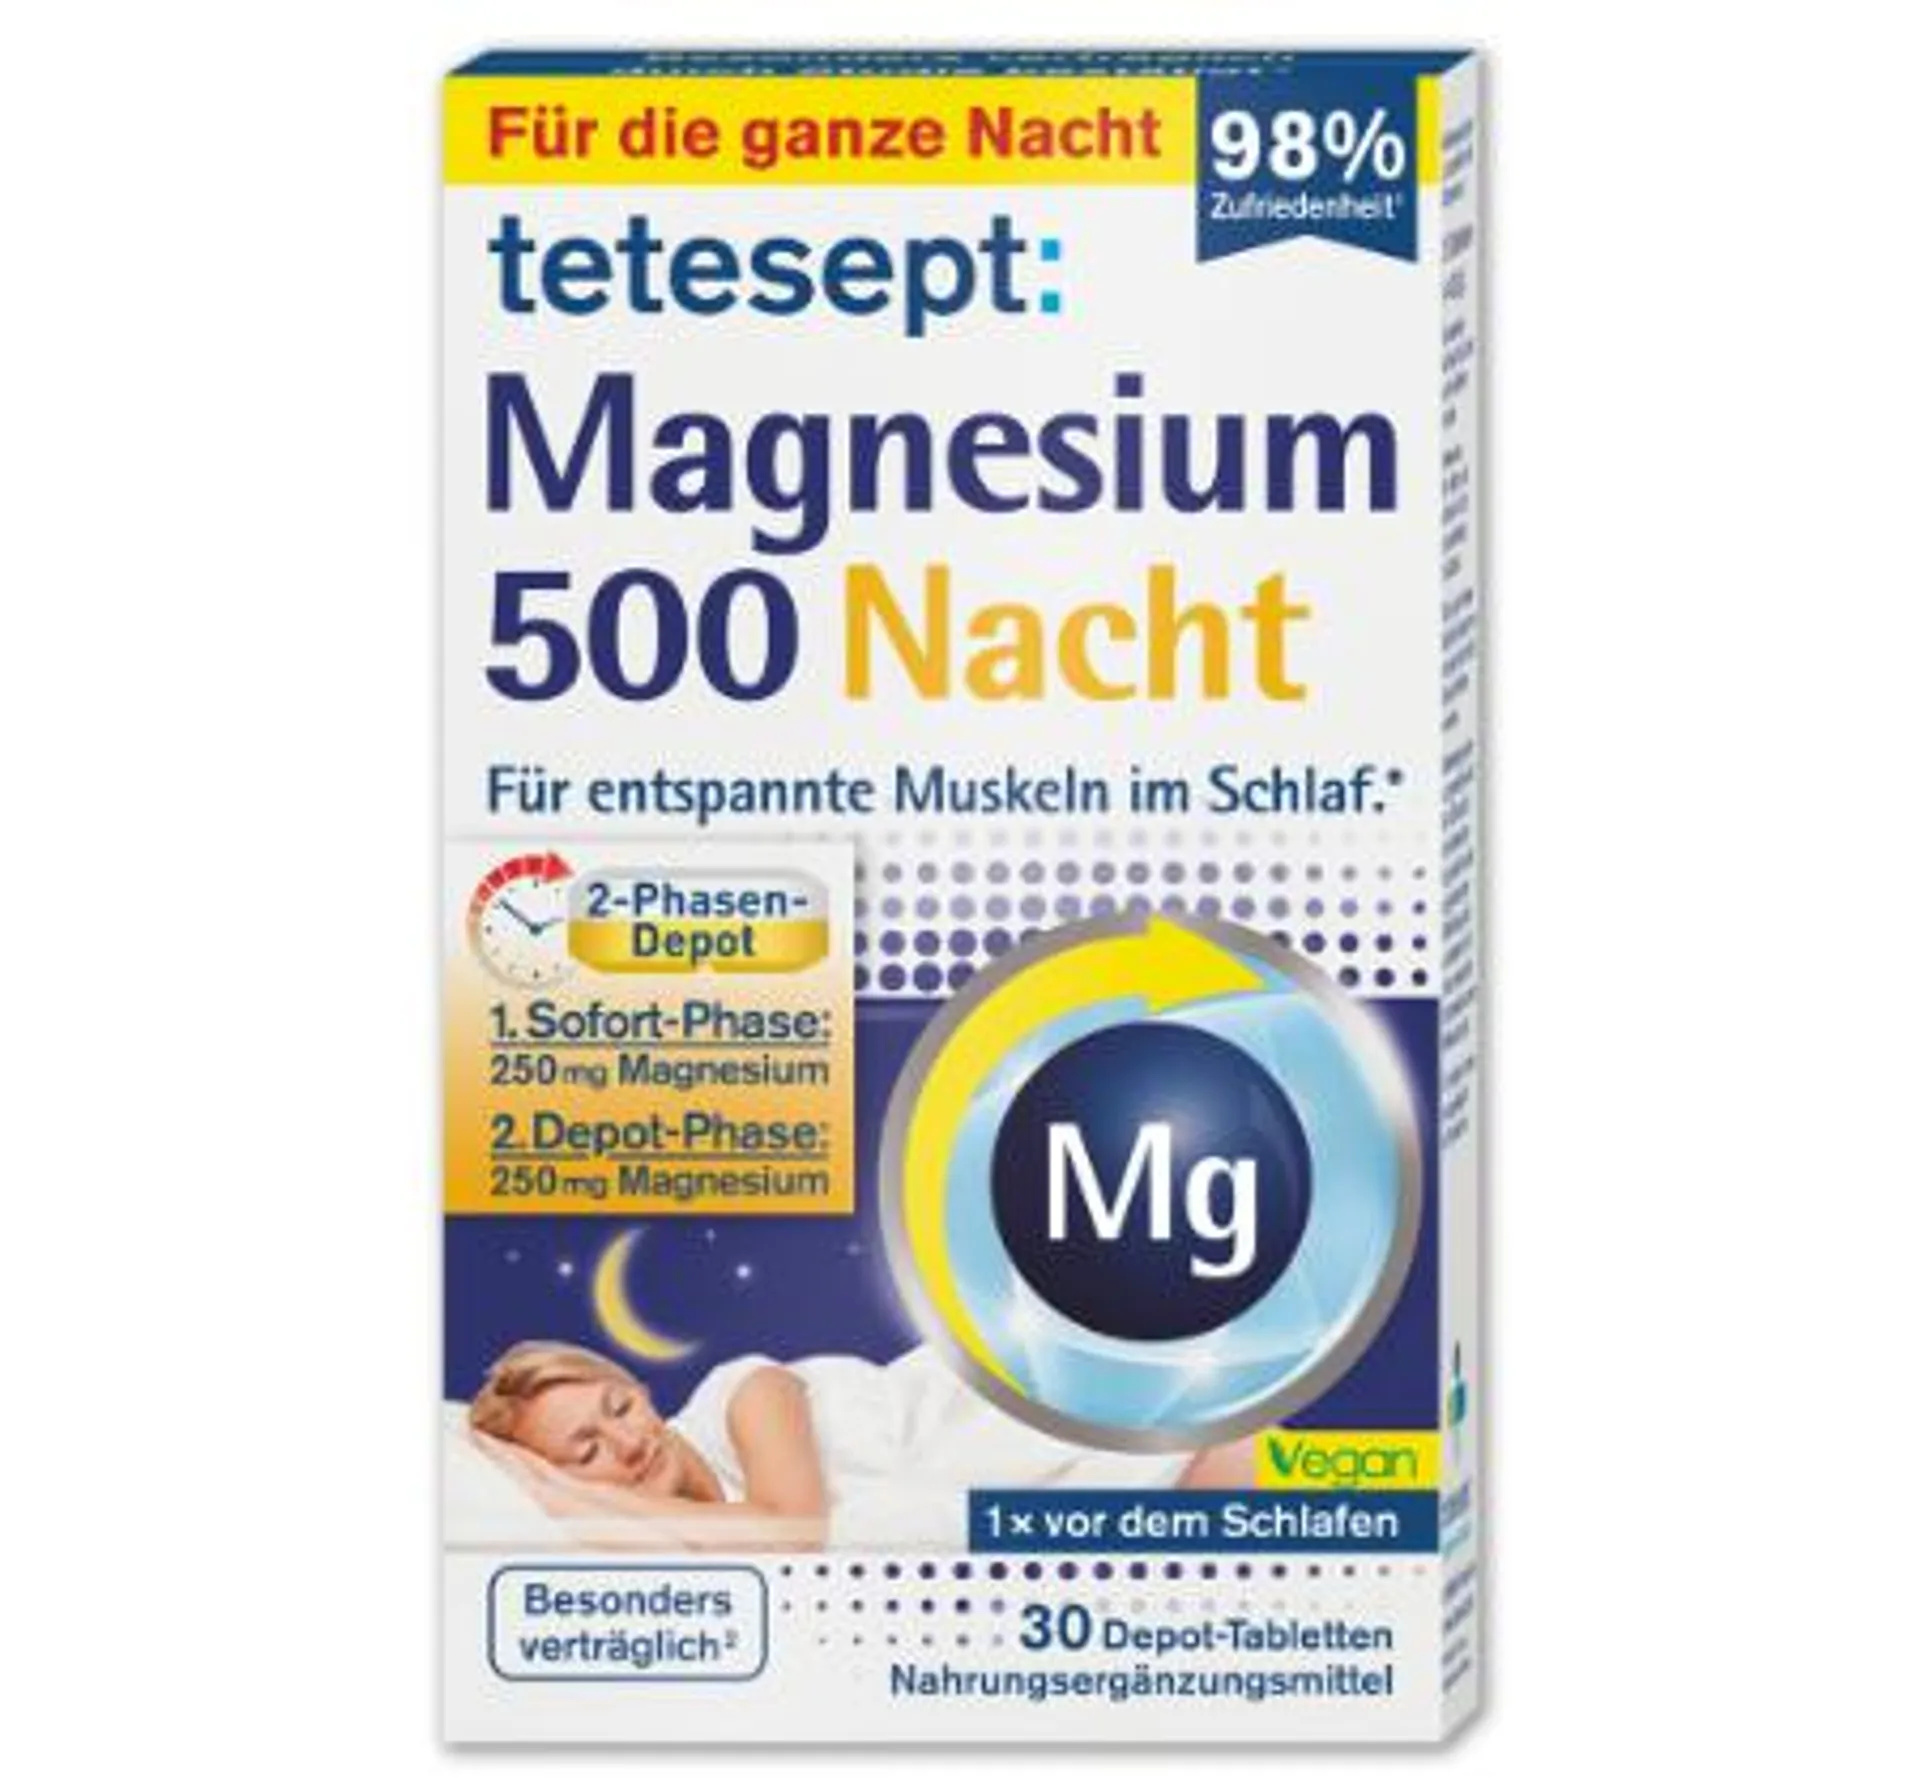 TETESEPT Magnesium 500 Nacht*